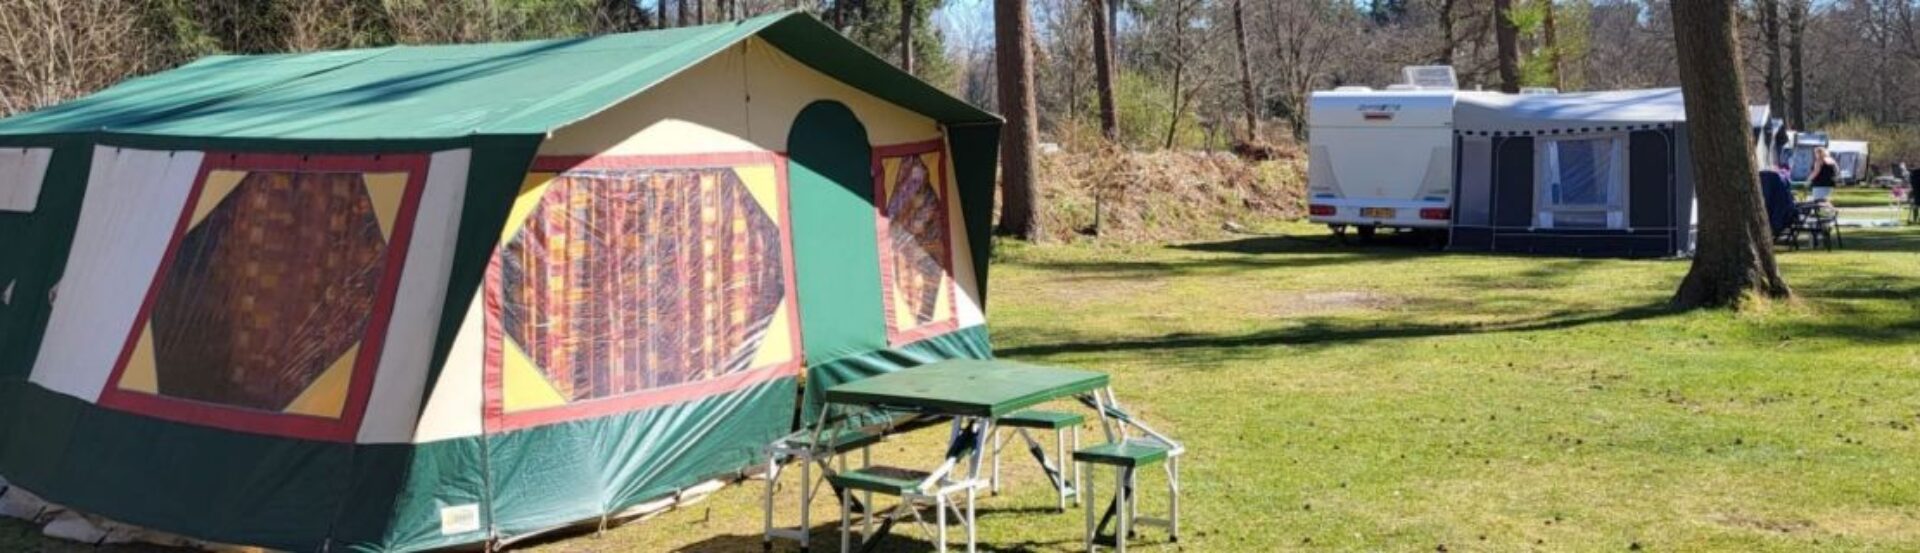 Vouwwagen op camping groen gras zon schijnt